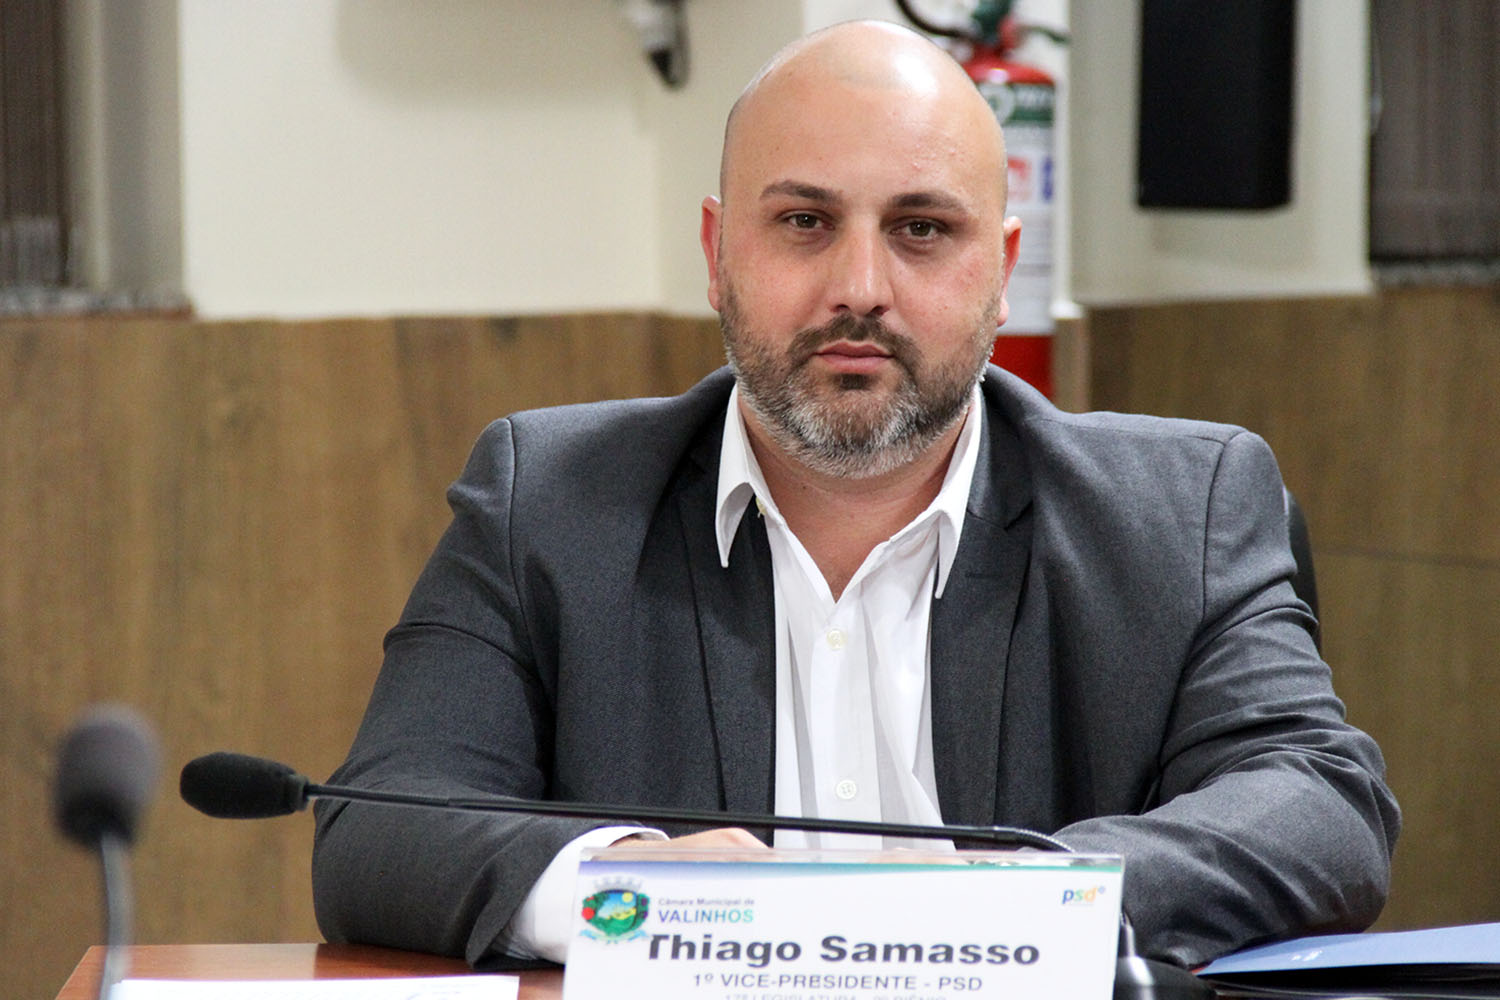 #PraCegoVer: foto mostra o vereador Thiago Samasso posando para a foto durante a sessão ordinária.